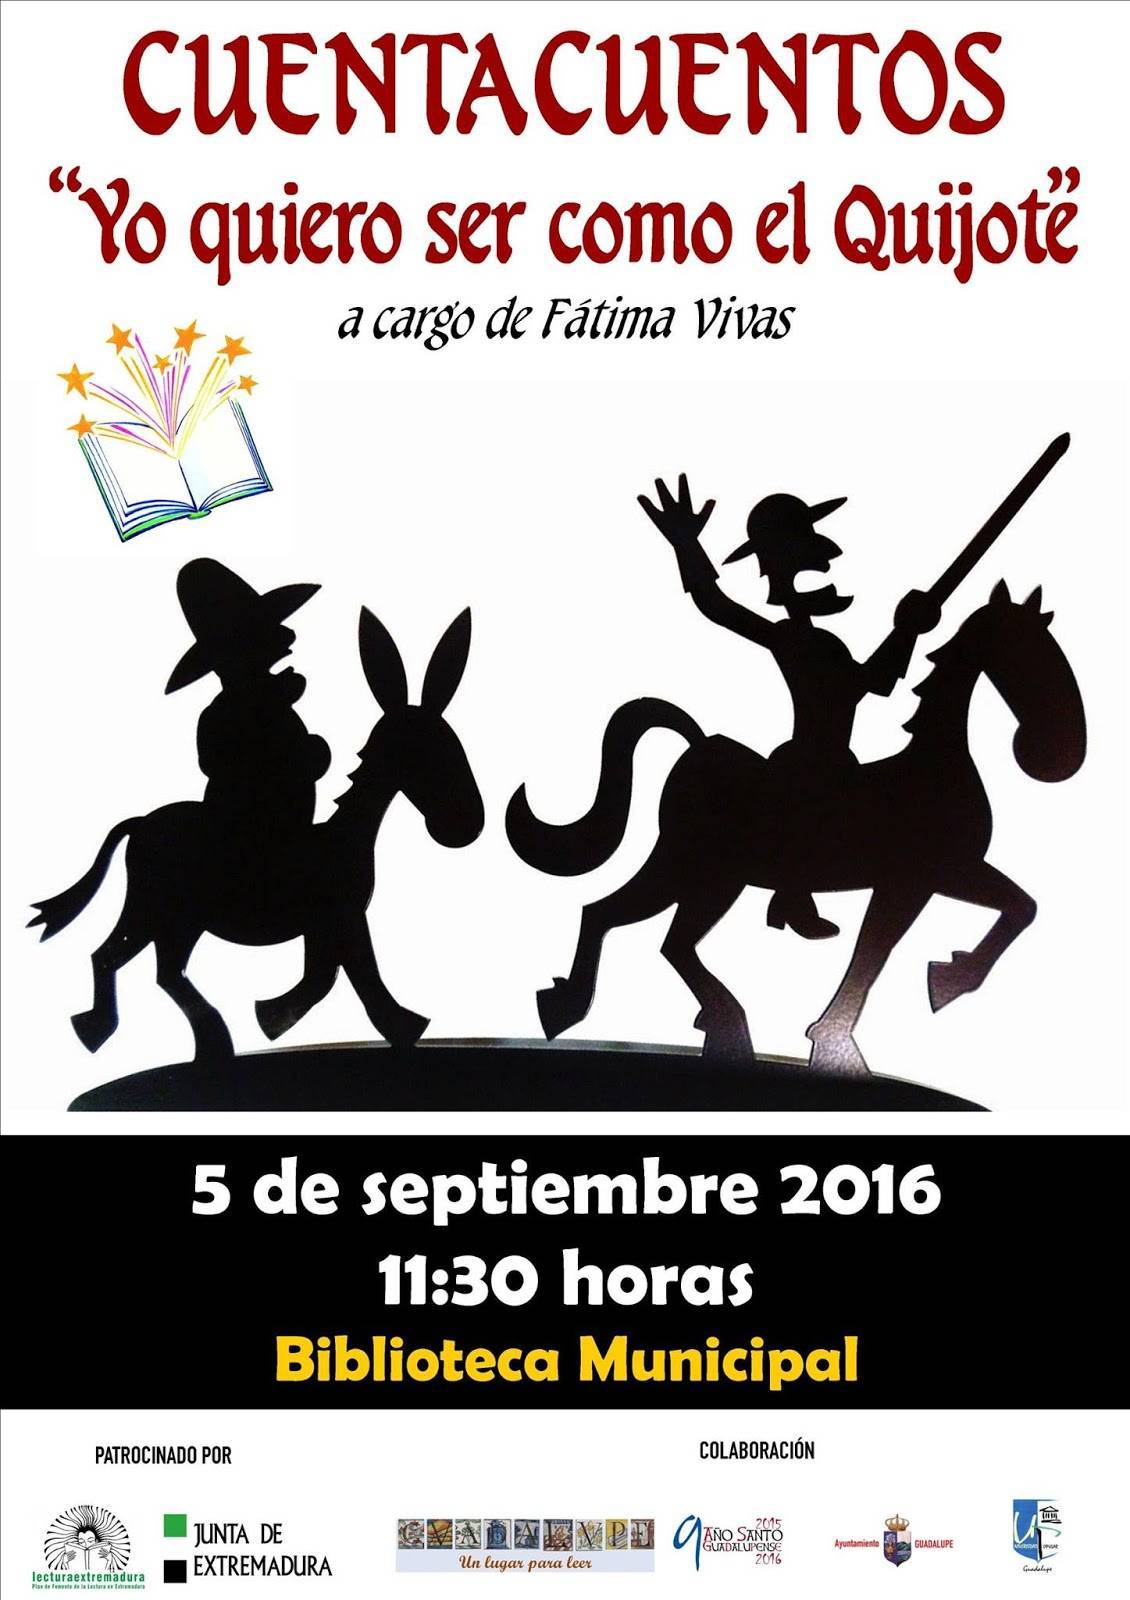 Cuentacuentos Yo quiero ser como el Quijote 2016 - Guadalupe (Cáceres)